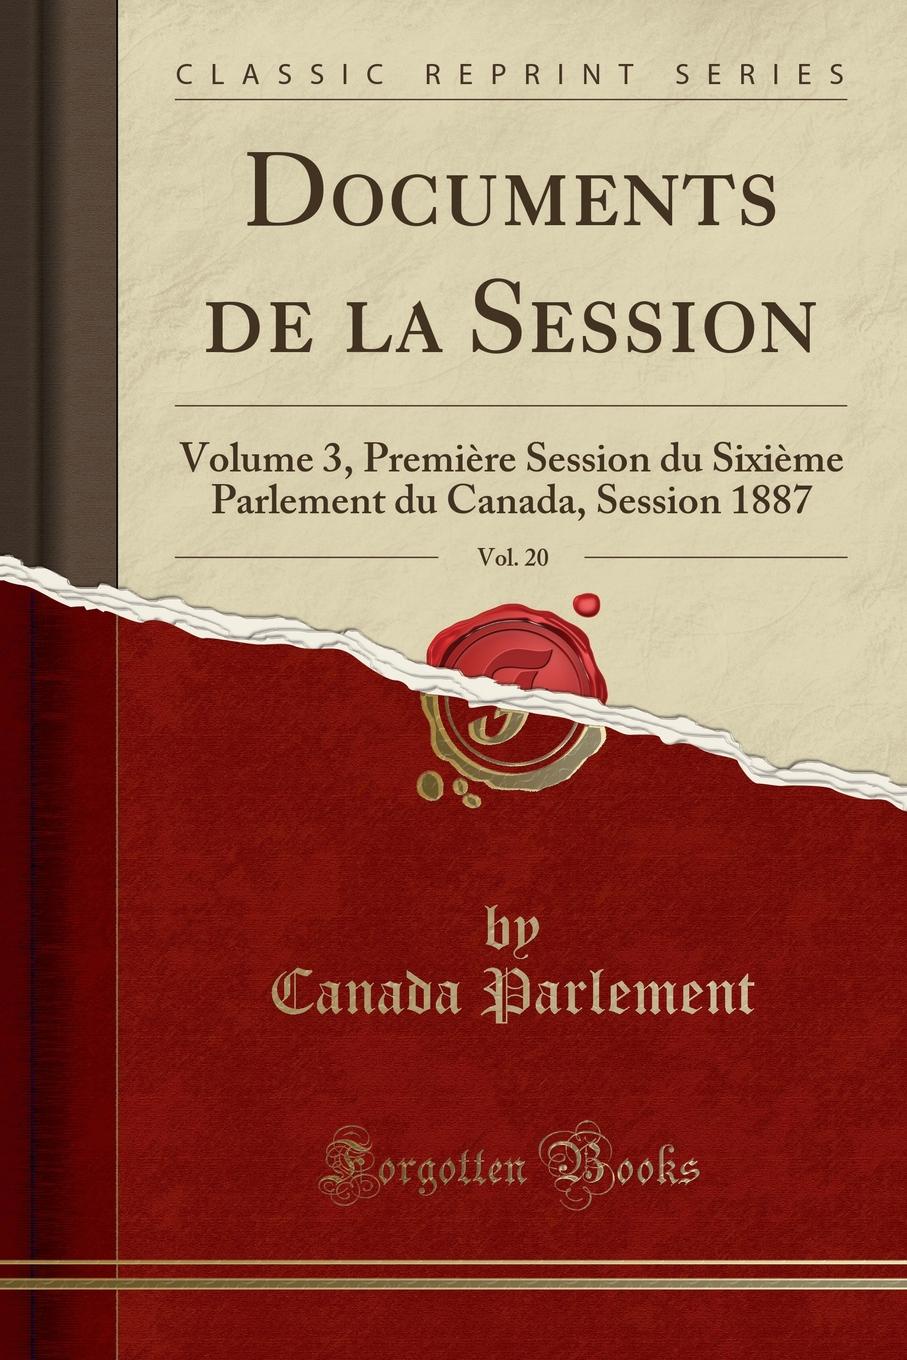 фото Documents de la Session, Vol. 20. Volume 3, Premiere Session du Sixieme Parlement du Canada, Session 1887 (Classic Reprint)